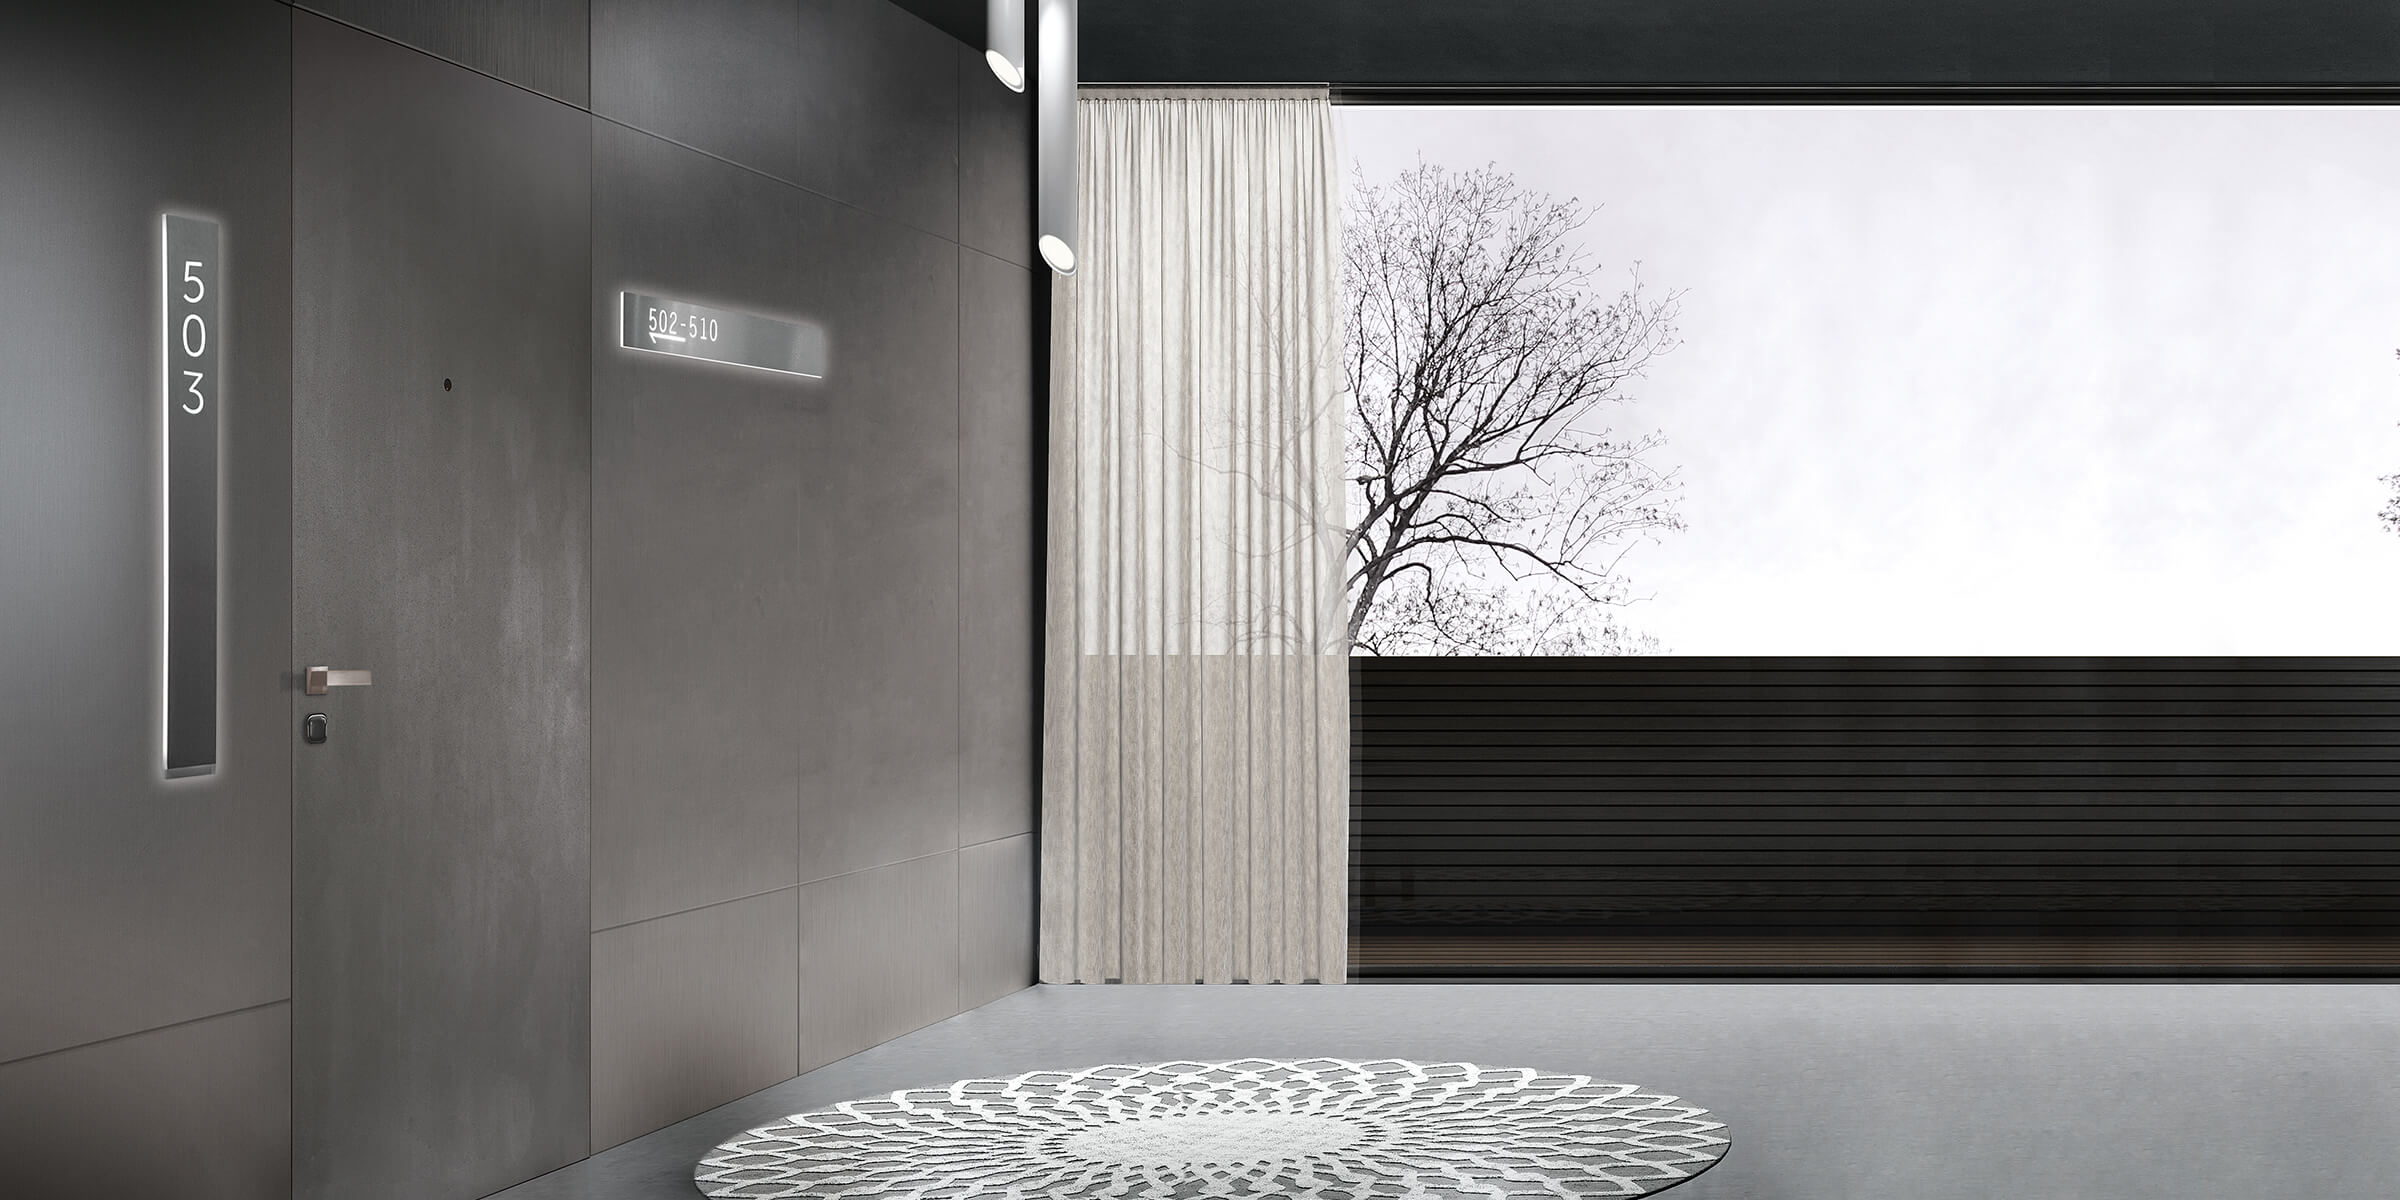 Flush-mounted hotel doors - GD Dorigo Eterea collection